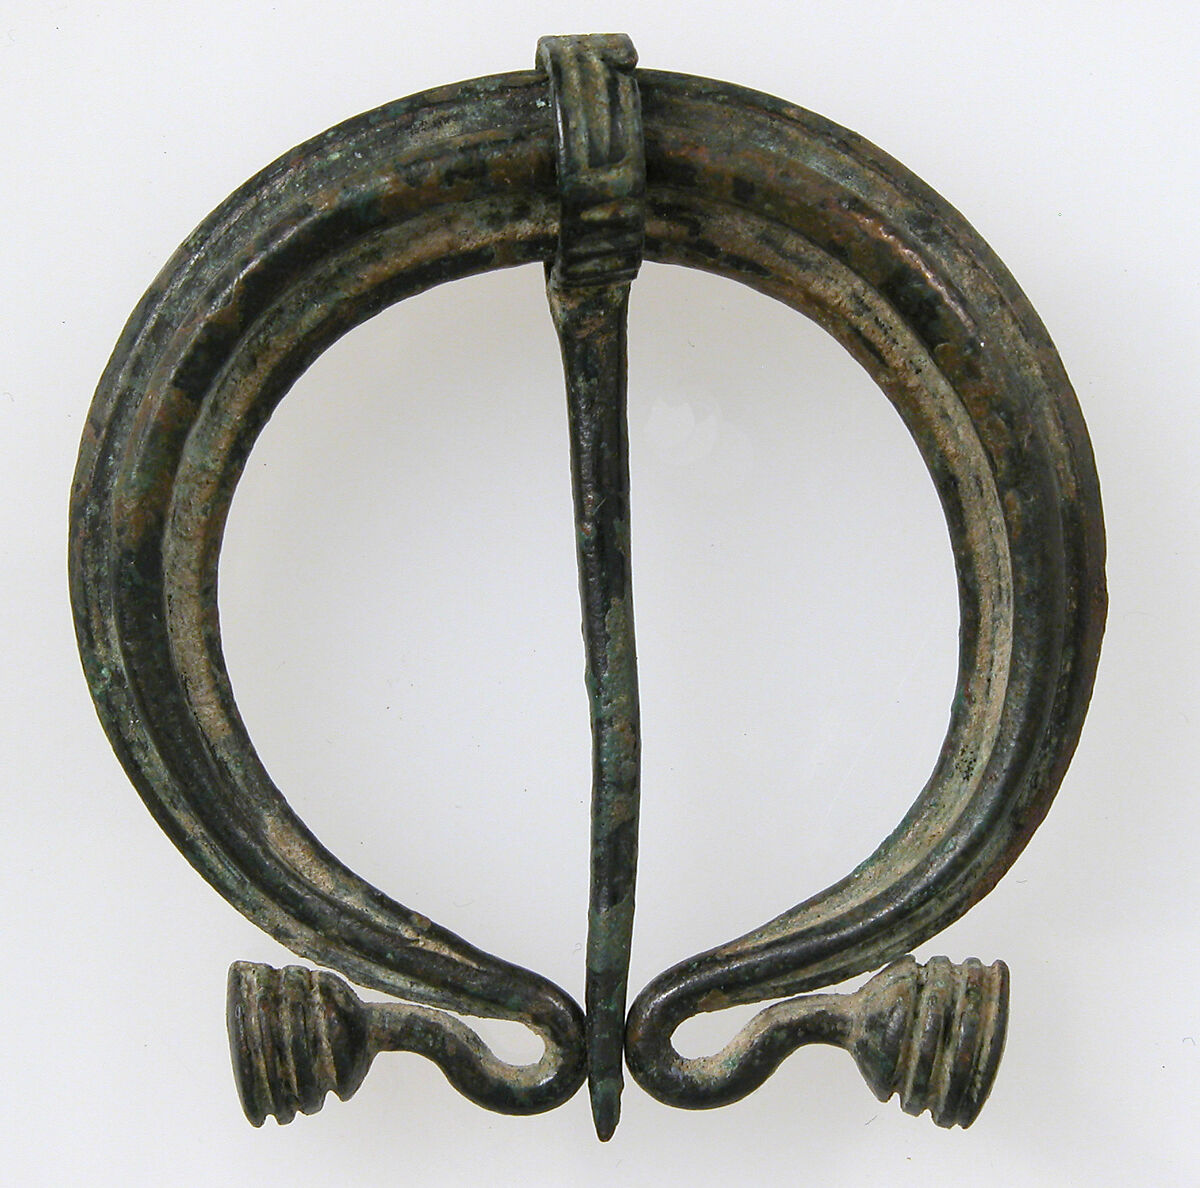 Pennanular or Omega Brooch, Bronze, Roman